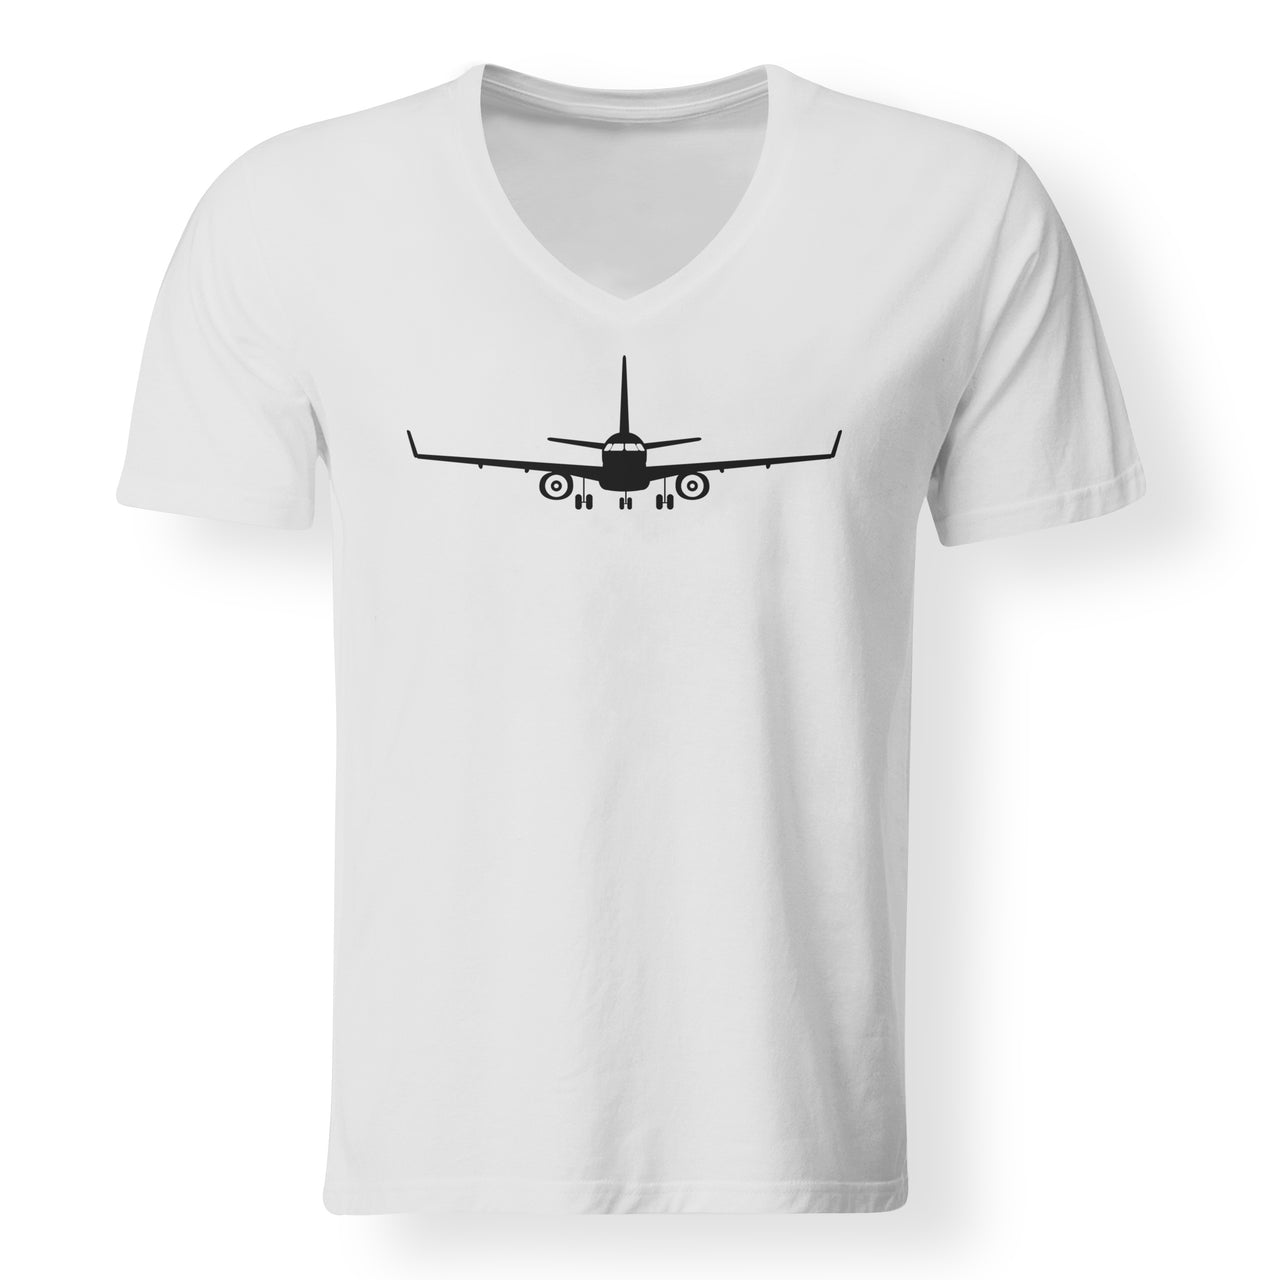 Embraer E-190 Silhouette Plane Designed V-Neck T-Shirts